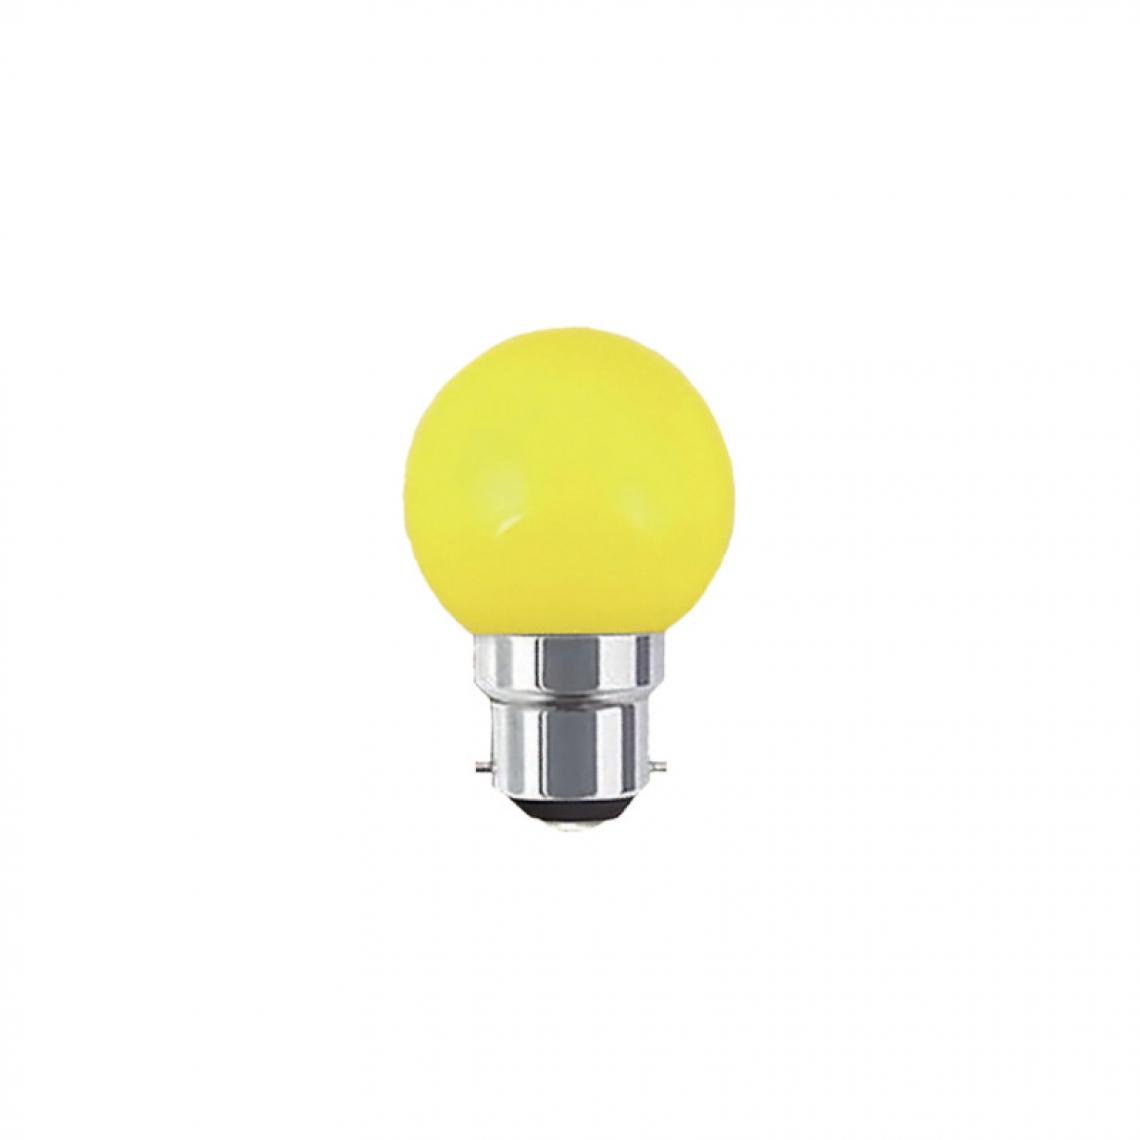 Xxcell - Ampoule LED guinguette jaune XXCELL - 1 W - B22 - Ampoules LED